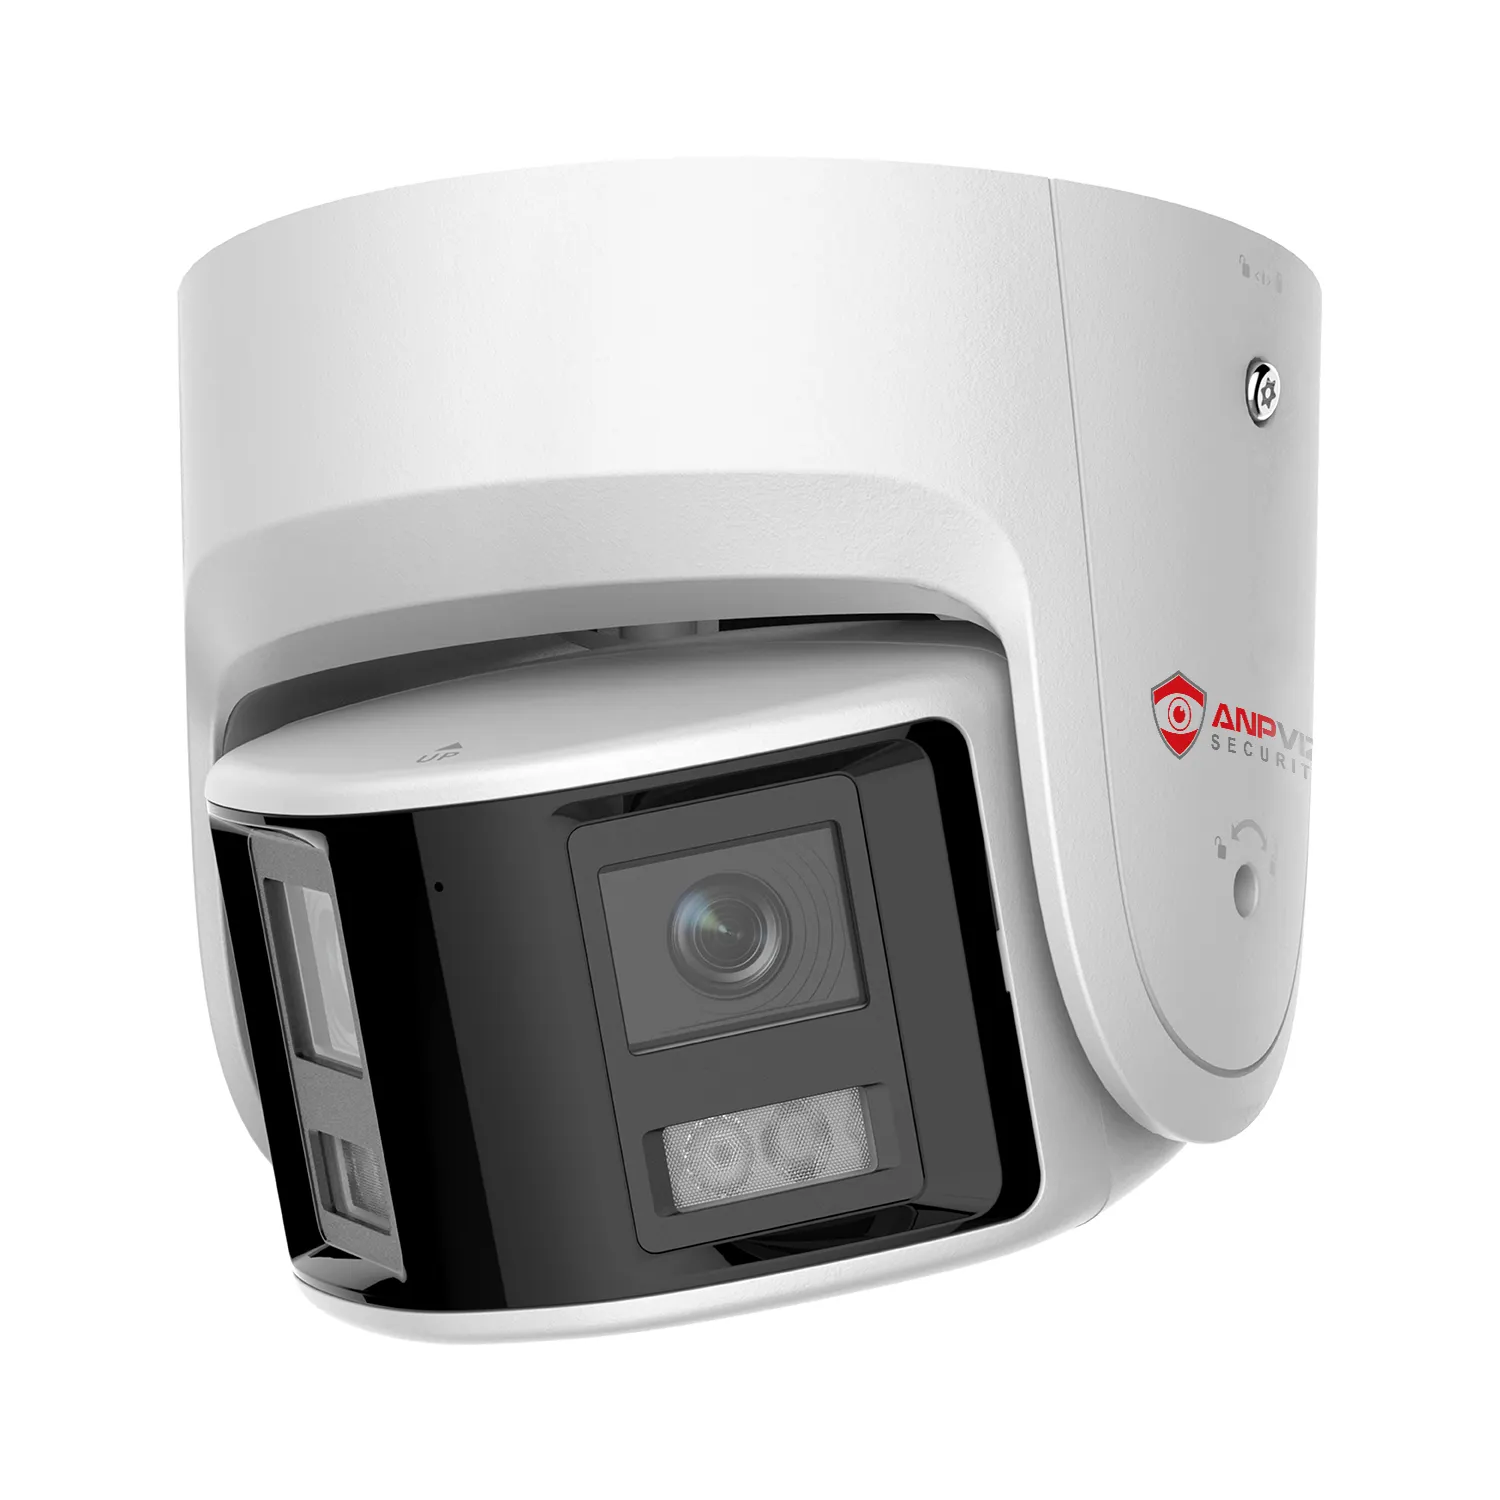 ANPVIZ Camera IP POE Camera Toàn Cảnh Ống Kính Kép 6MP CCTV Camera Phát Hiện Người/Xe 180 Độ Âm Thanh & Đèn Flash Báo Động Nói Chuyện 2 Chiều